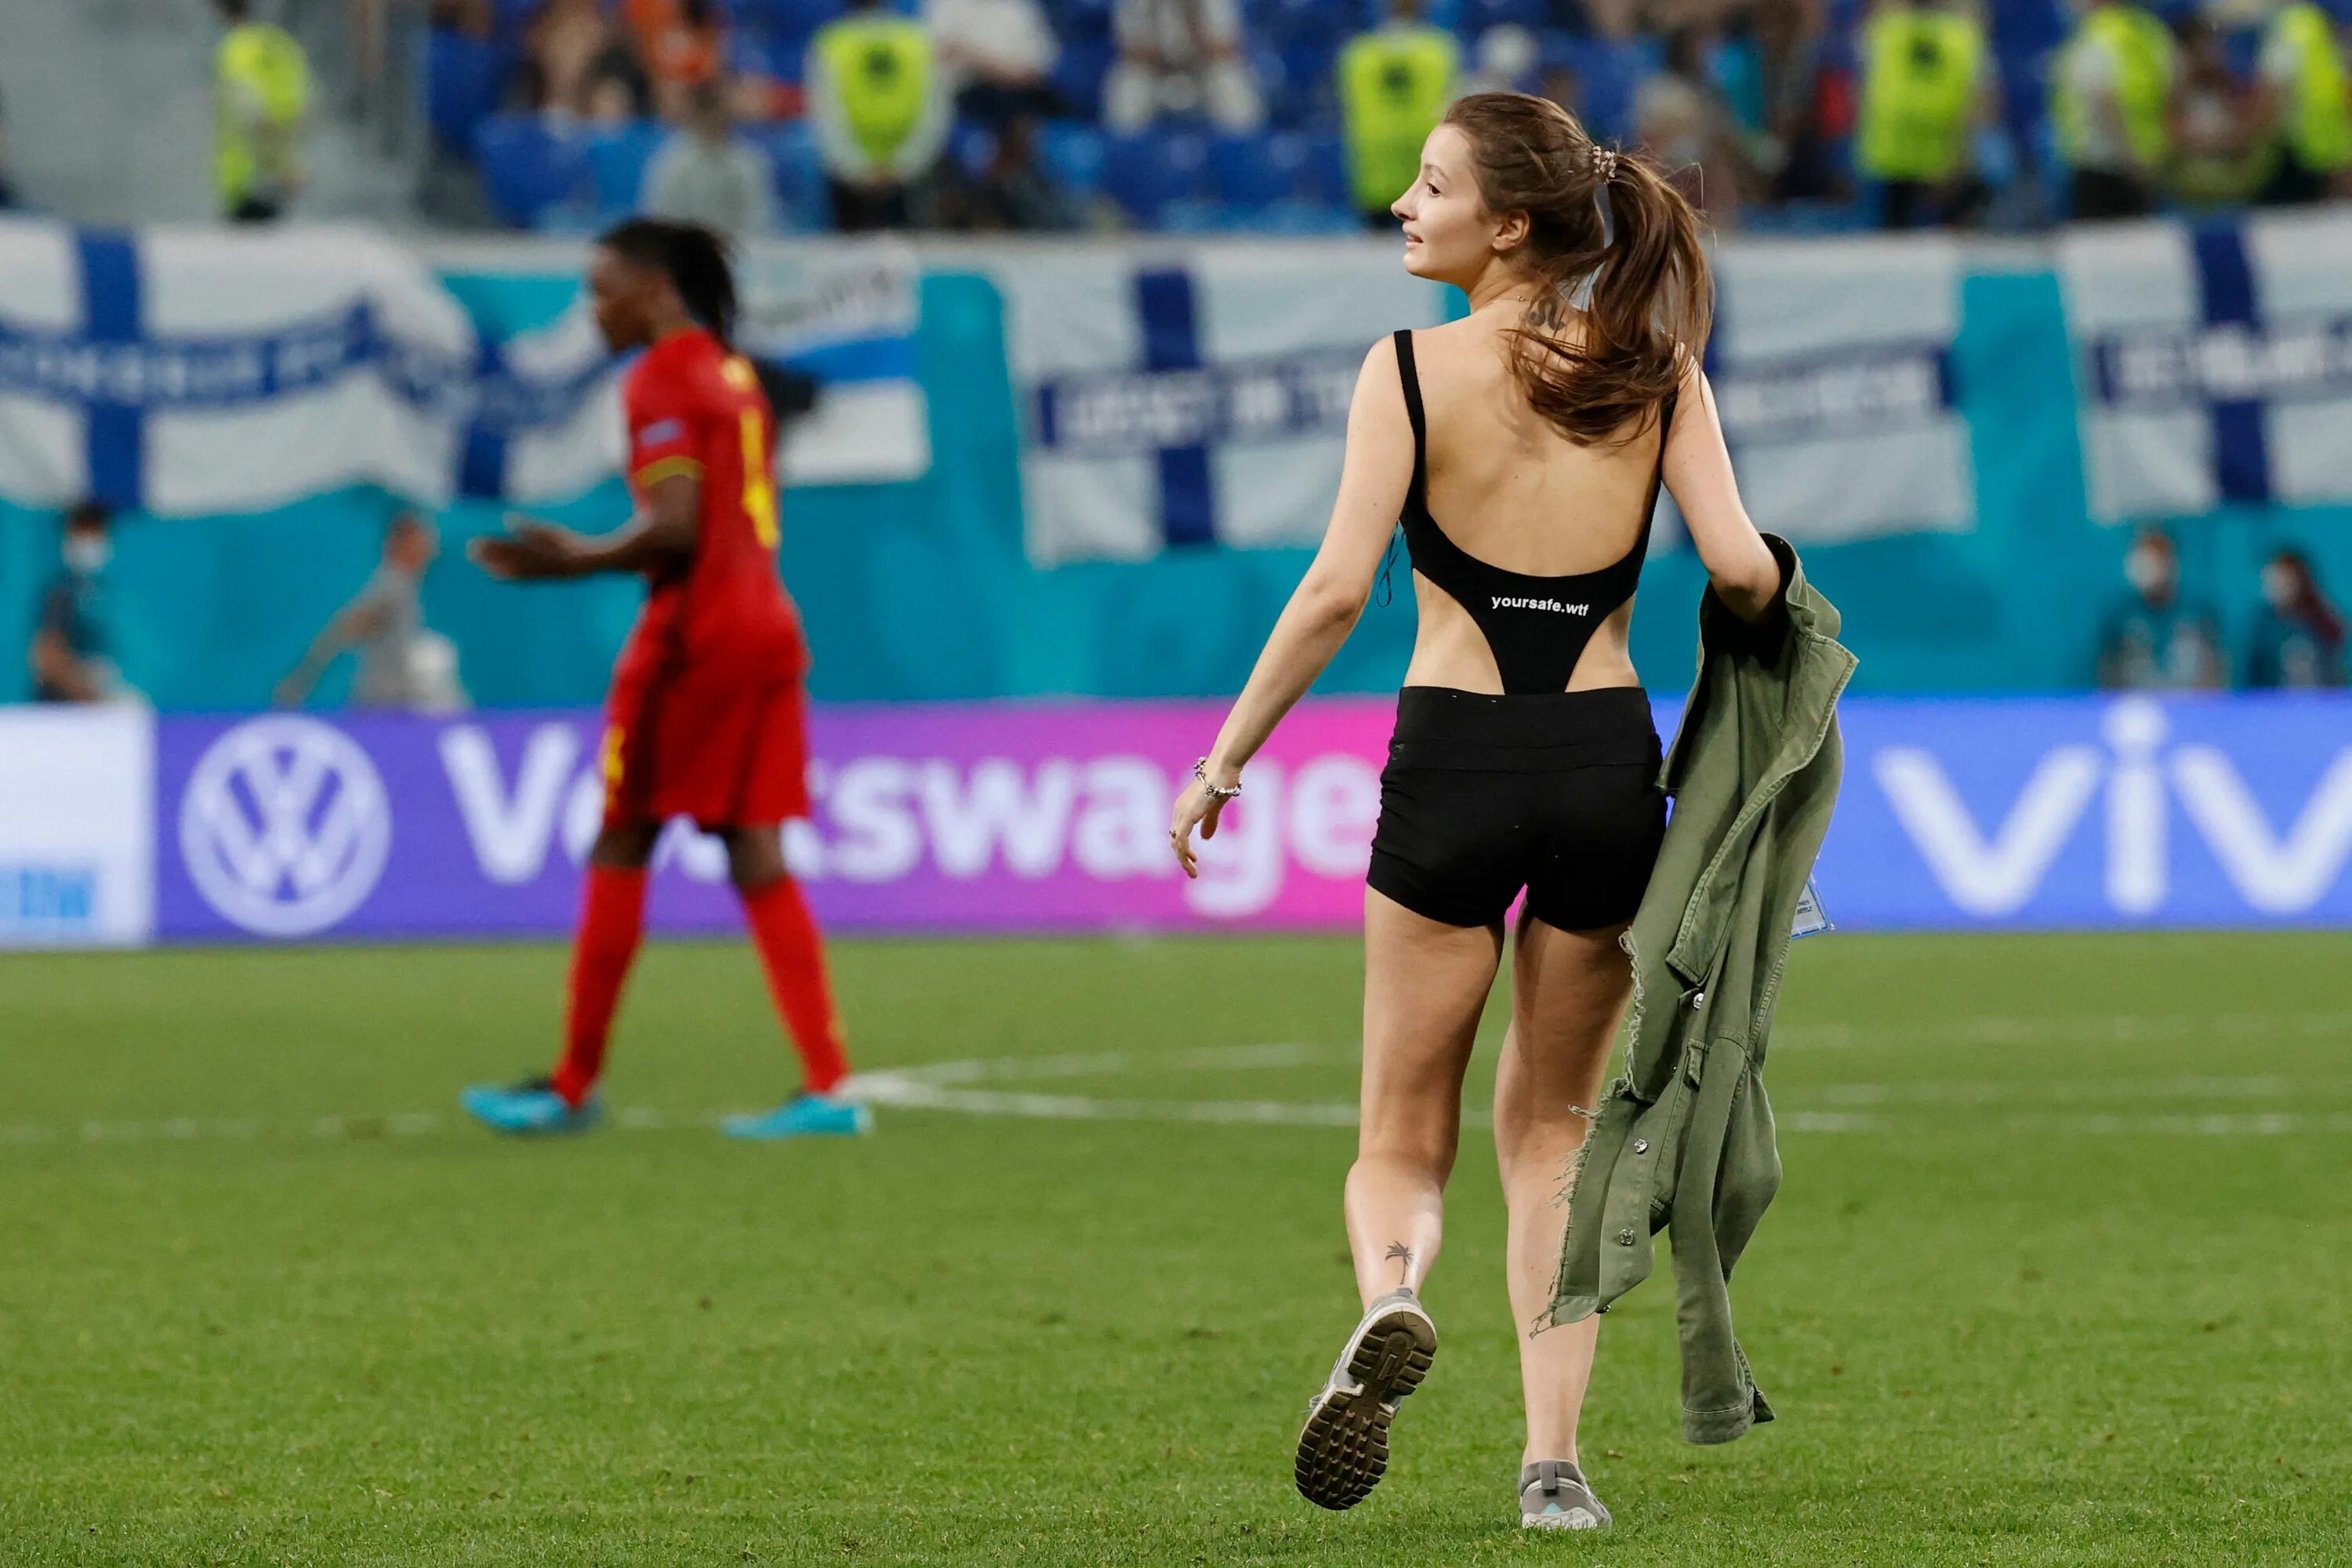 Люди выбежавшие на поле. Болельщицы евро 2020. Болельщица выбежала на поле евро 2020. Девушка выбежала на поле. Девушка на футбольном поле.